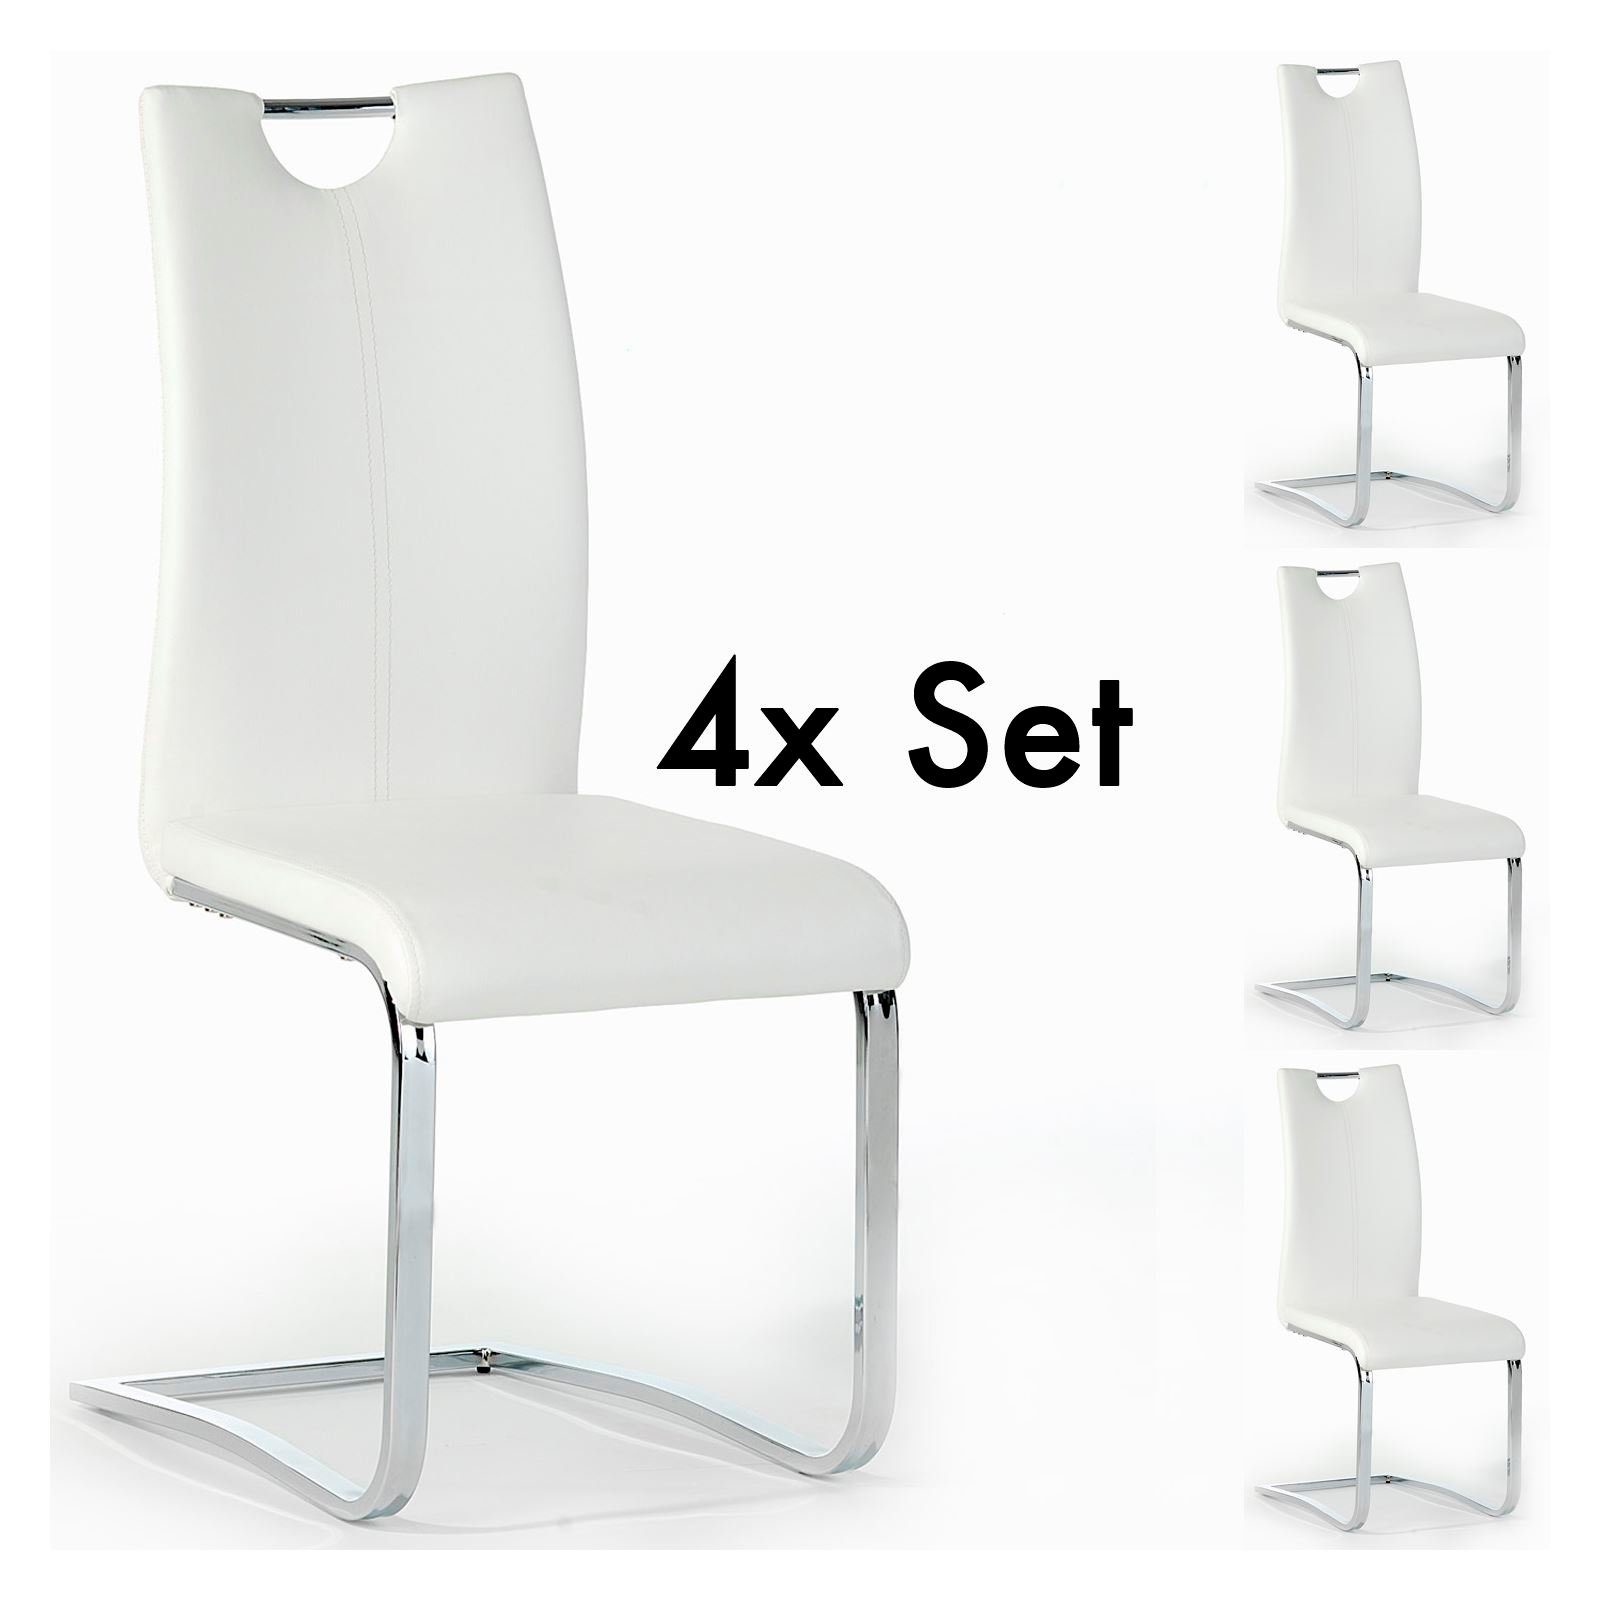 IDIMEX Esszimmerstuhl SABA (4 St), 4 x Schwingstuhl Freischwinger Esszimmerstuhlgruppe Set in 4 Farben weiß